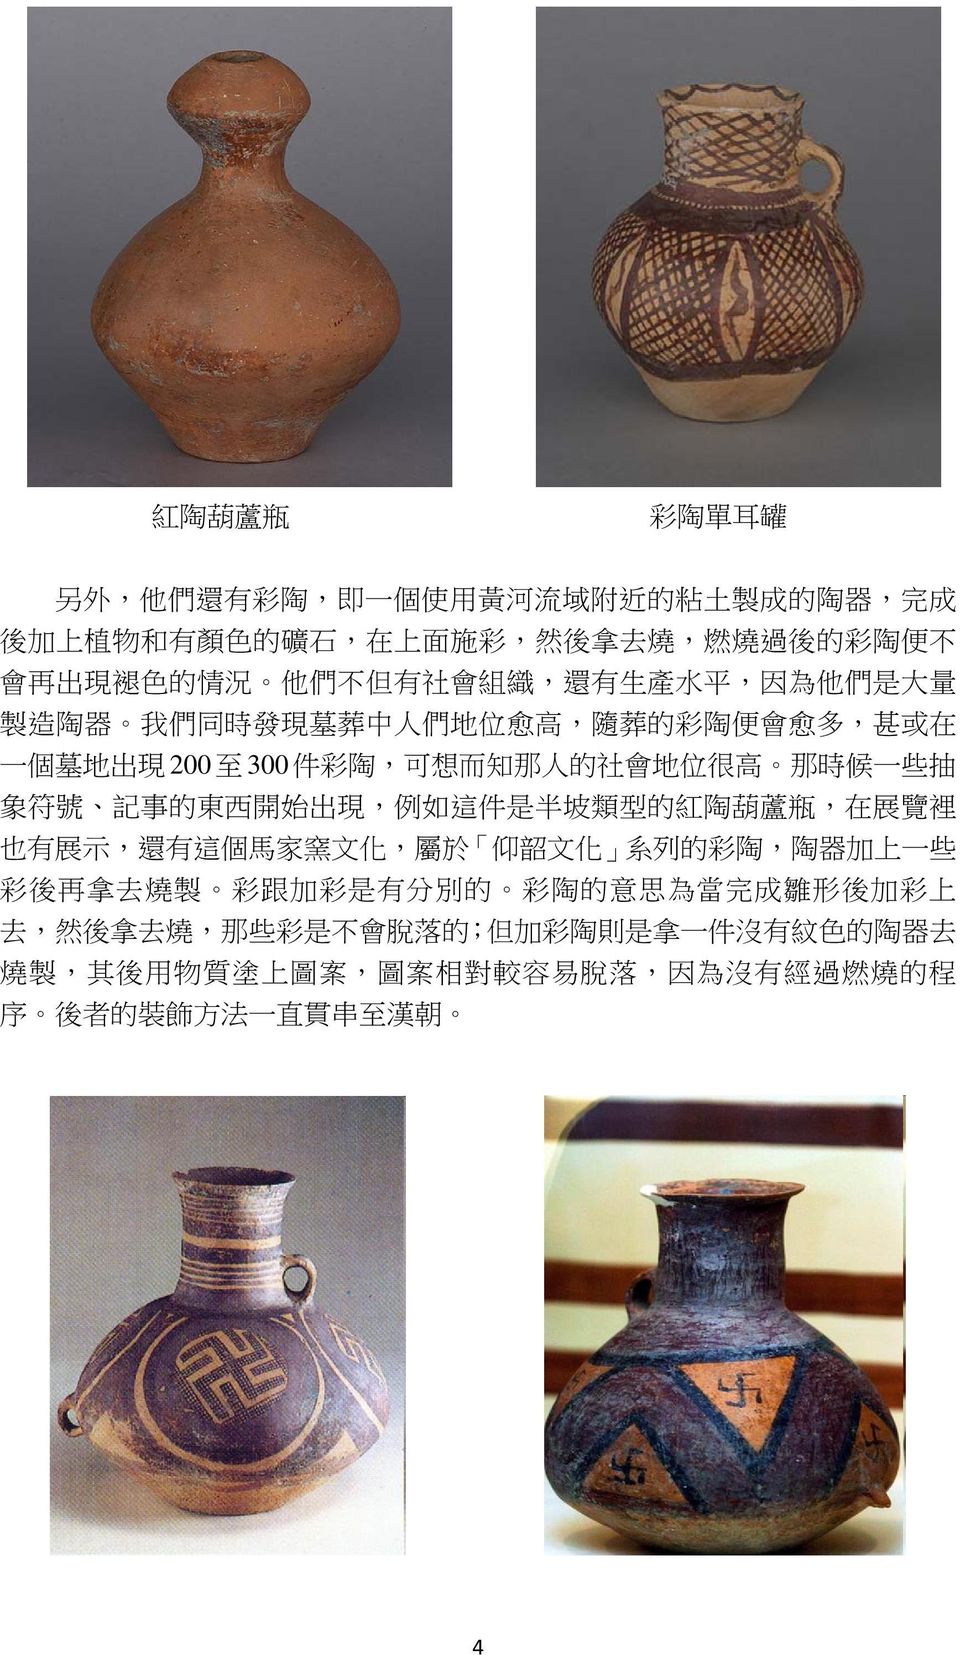 號 記 事 的 東 西 開 始 出 現, 例 如 這 件 是 半 坡 類 型 的 紅 陶 葫 蘆 瓶, 在 展 覽 裡 也 有 展 示, 還 有 這 個 馬 家 窯 文 化, 屬 於 仰 韶 文 化 系 列 的 彩 陶, 陶 器 加 上 一 些 彩 後 再 拿 去 燒 製 彩 跟 加 彩 是 有 分 別 的 彩 陶 的 意 思 為 當 完 成